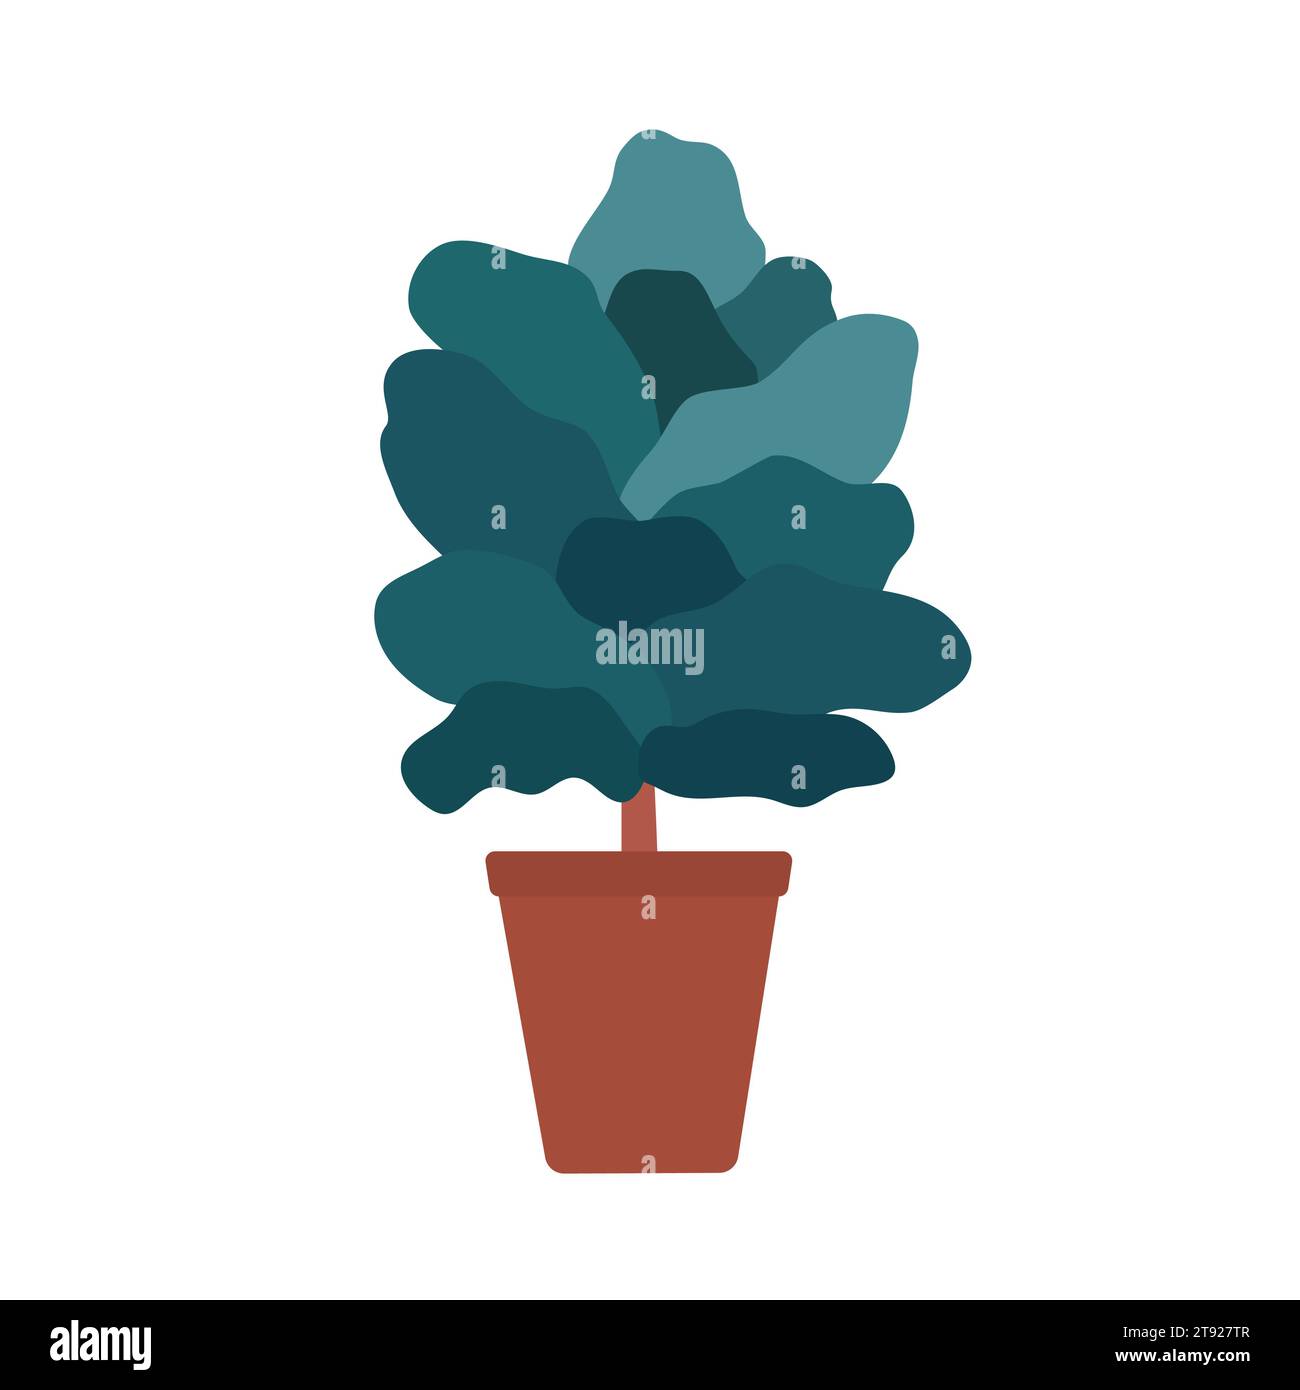 Vektorisolierte Illustration mit exotischem Ficus lyrata im Keramiktopf. Poster für einen professionellen Reiseleiter über den Anbau von Pflanzen wie Geigen-Blatt-Feigen zu Hause. Stock Vektor